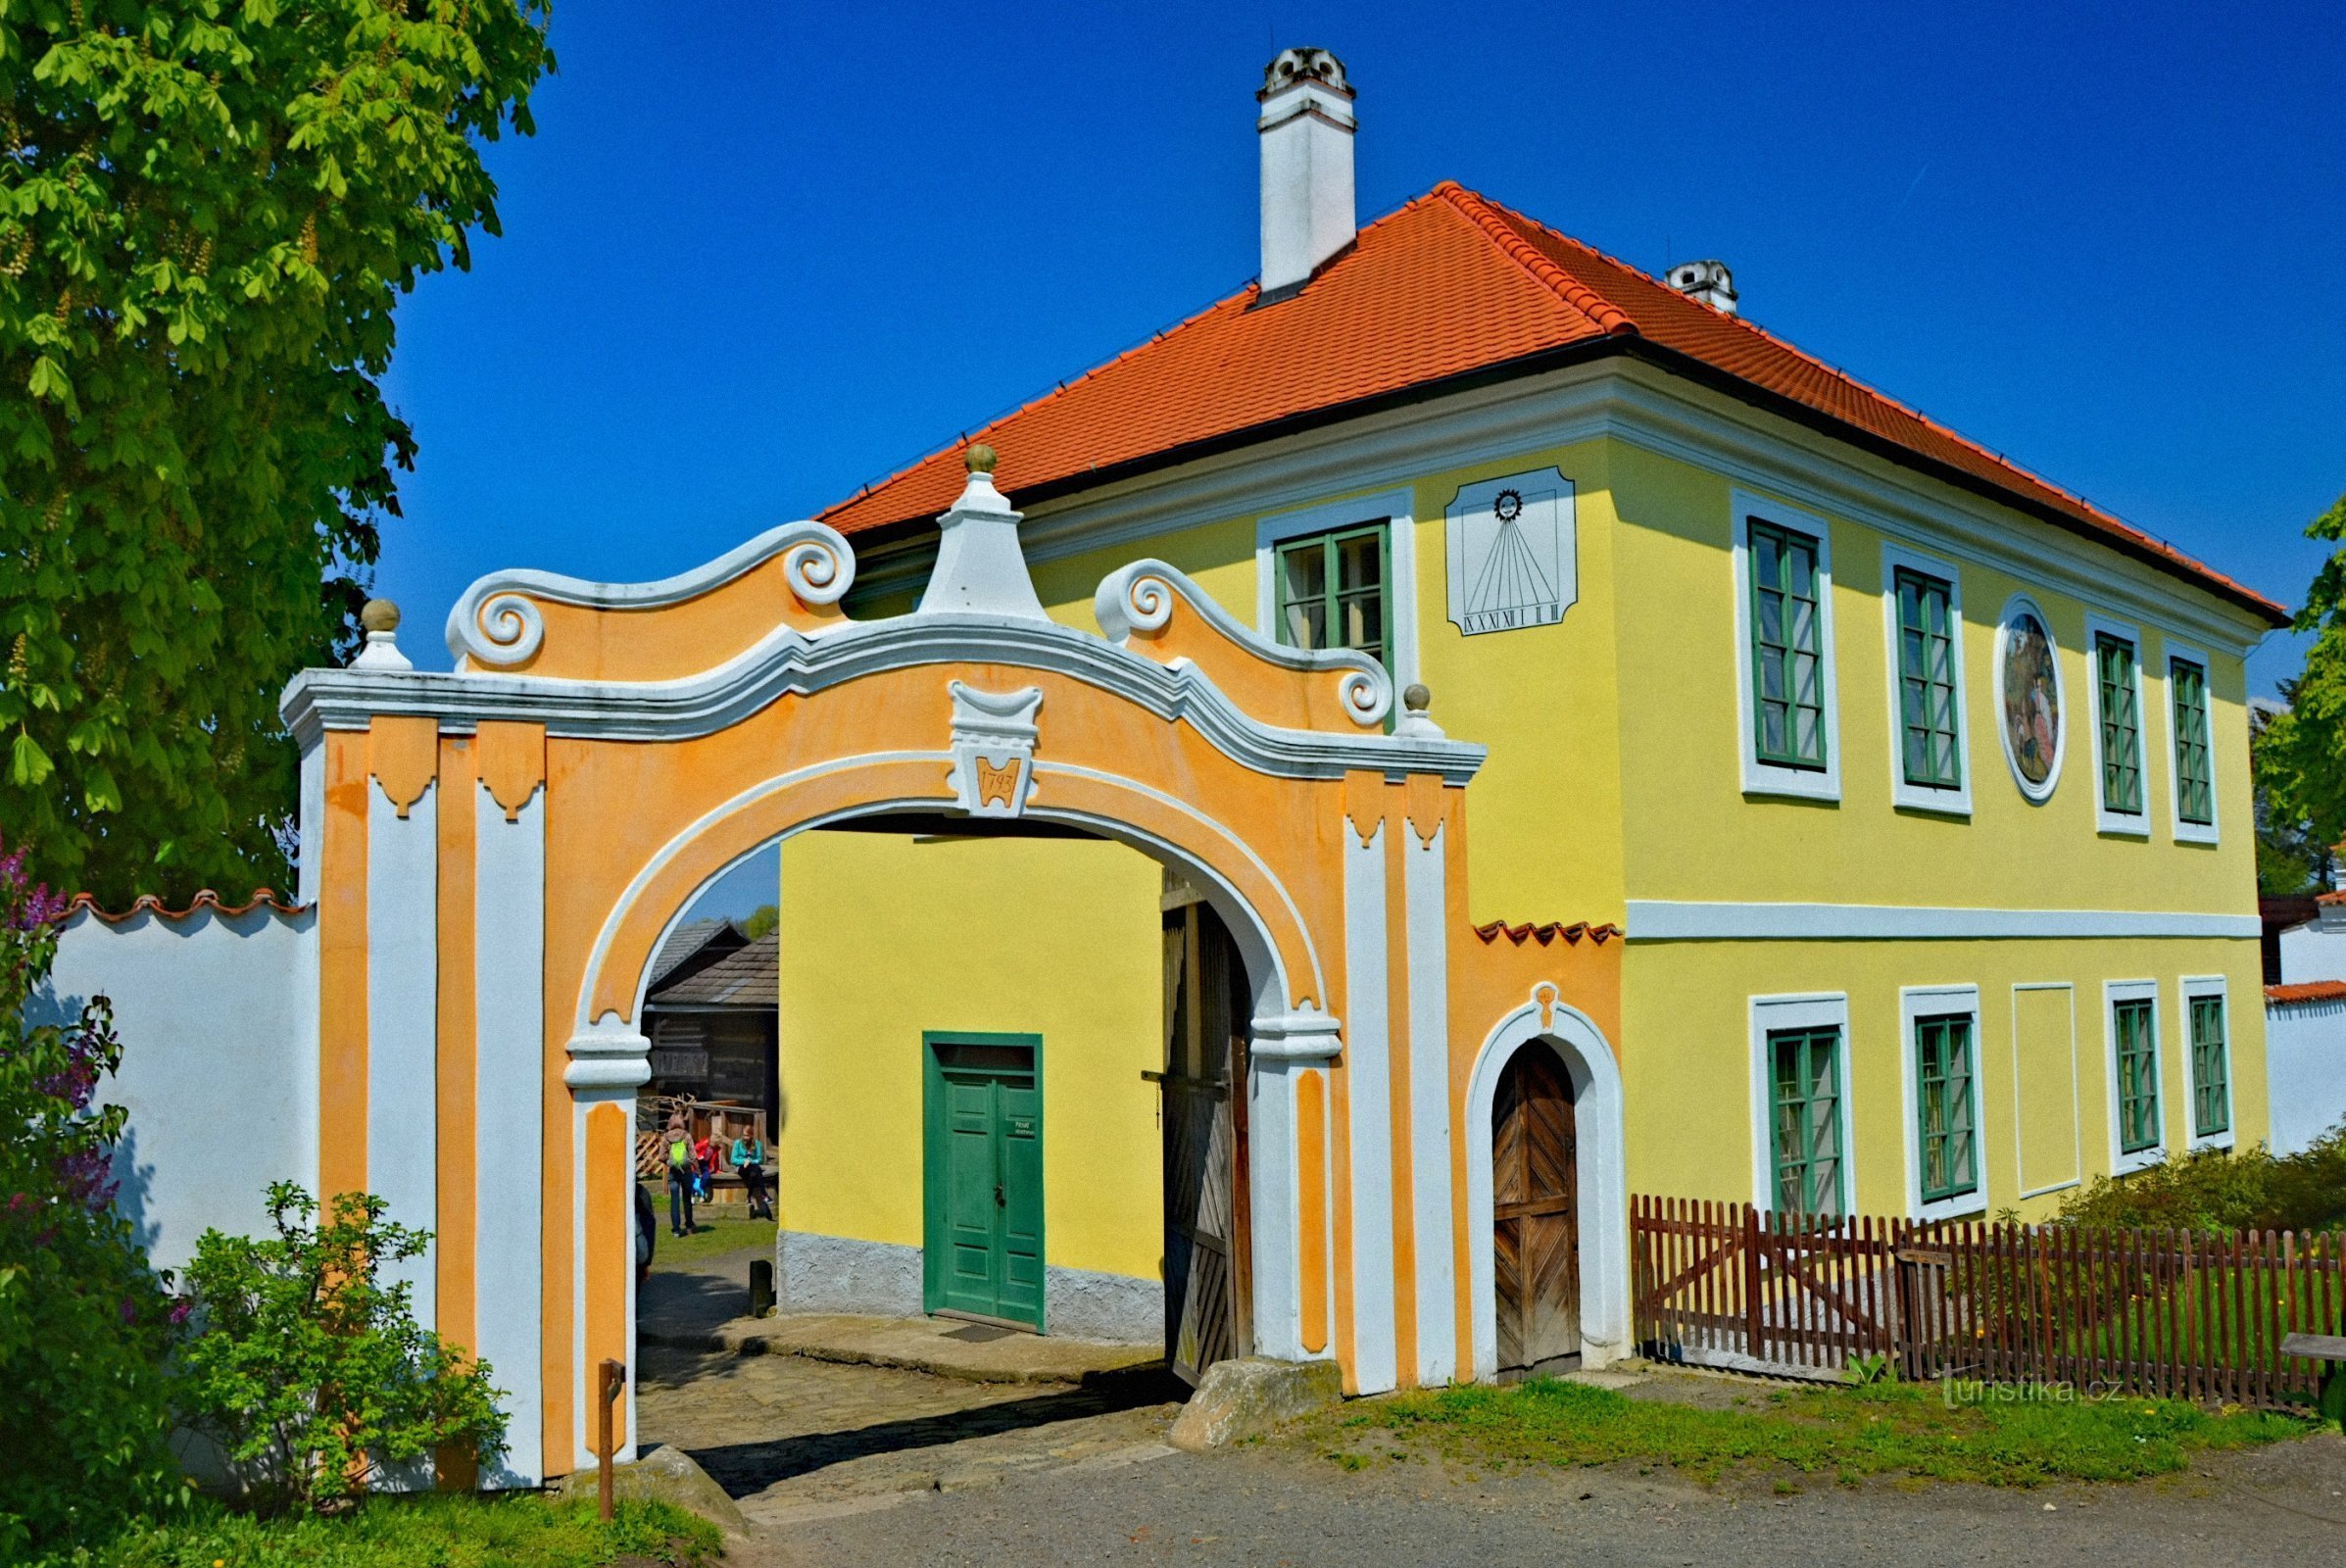 Polabsk etnografisch museum Přerov nad Labem